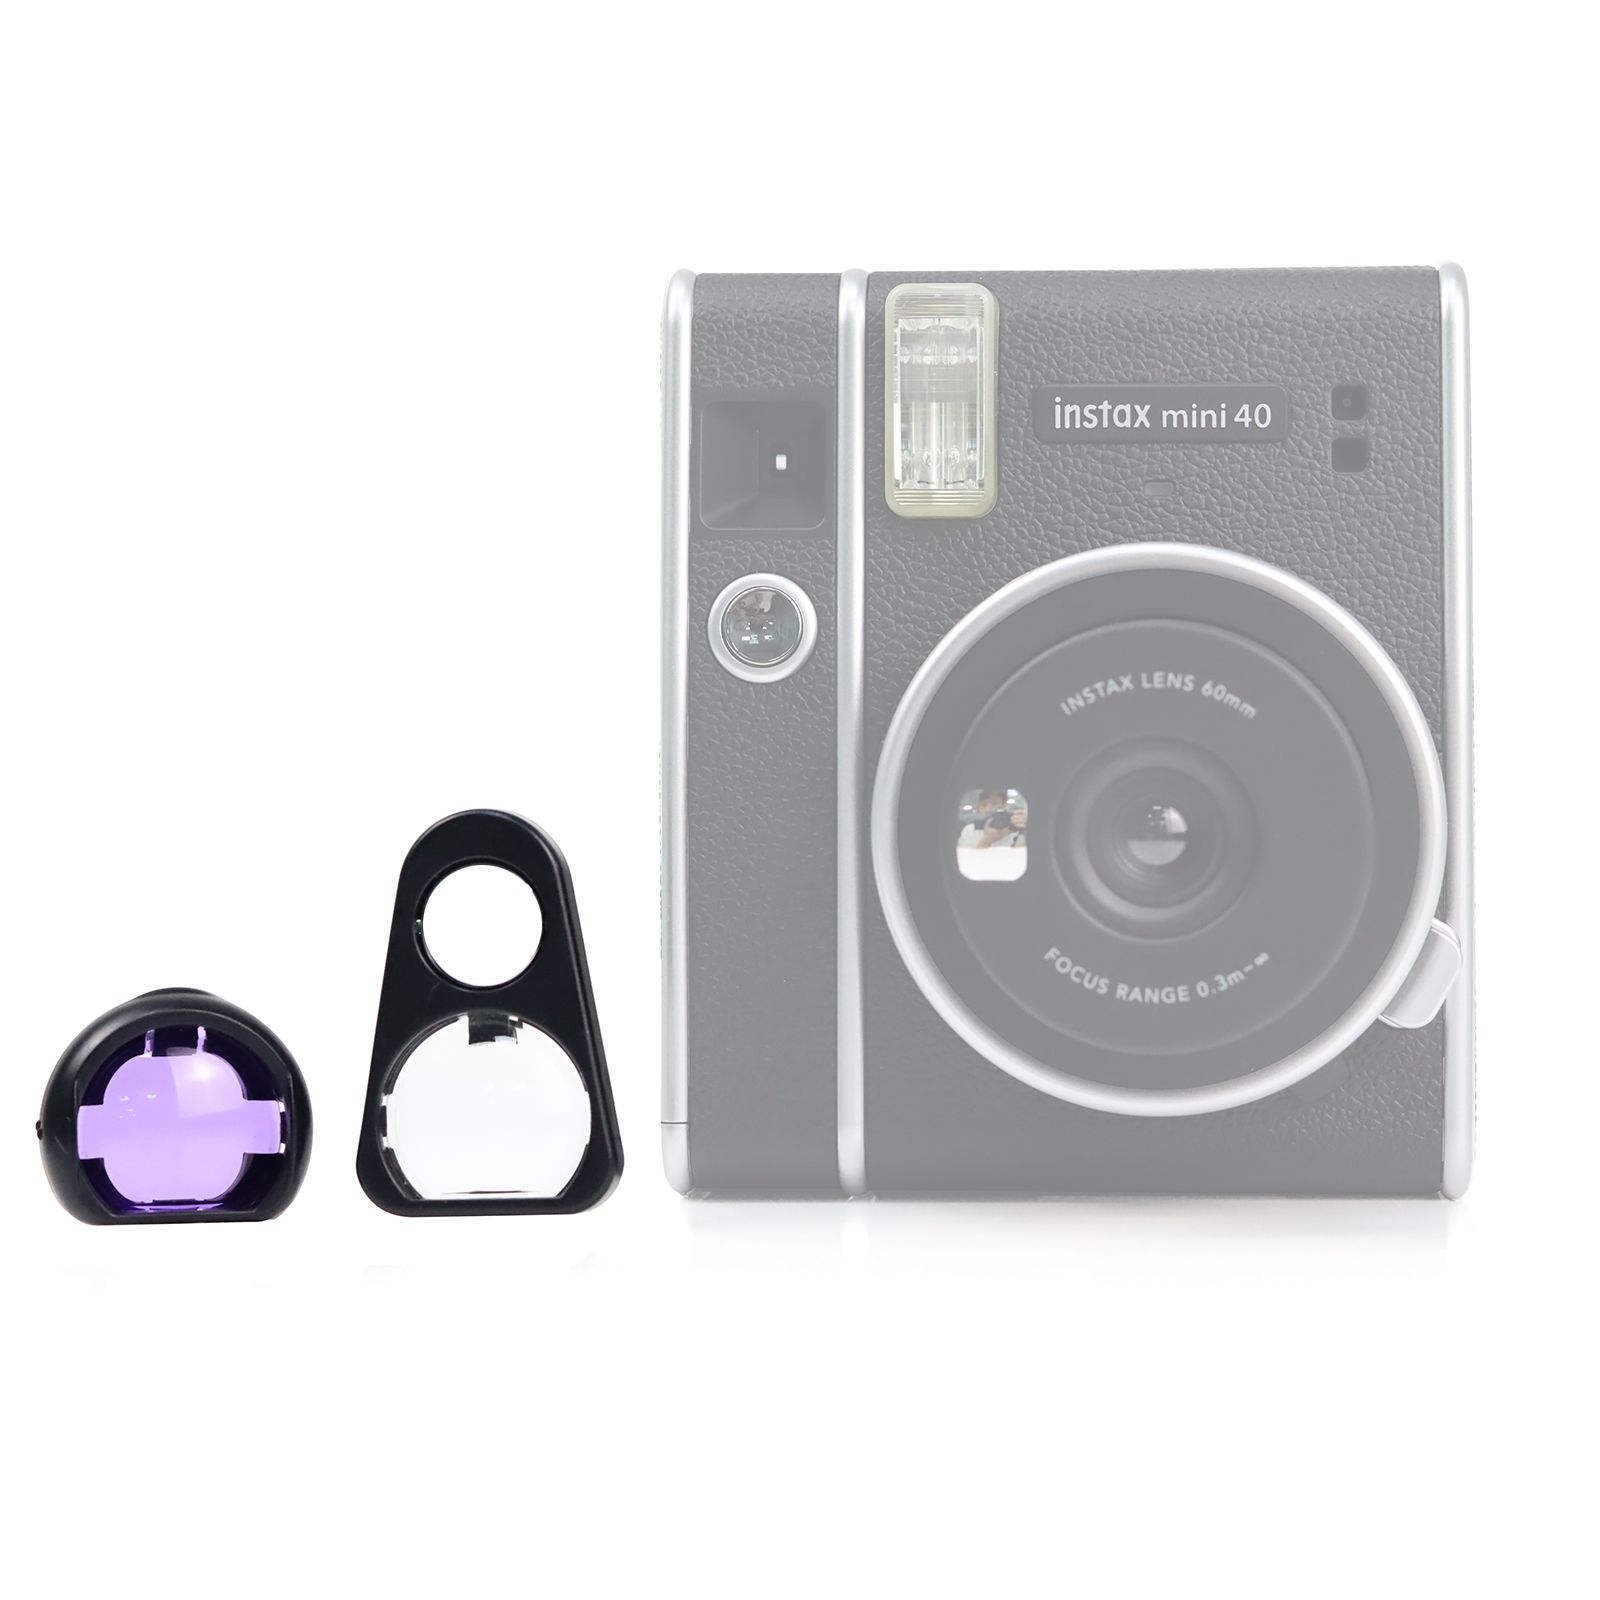  Bộ lọc màu tím tự selfie 2 trong 1 cho Fujifilm Instax Mini 40 